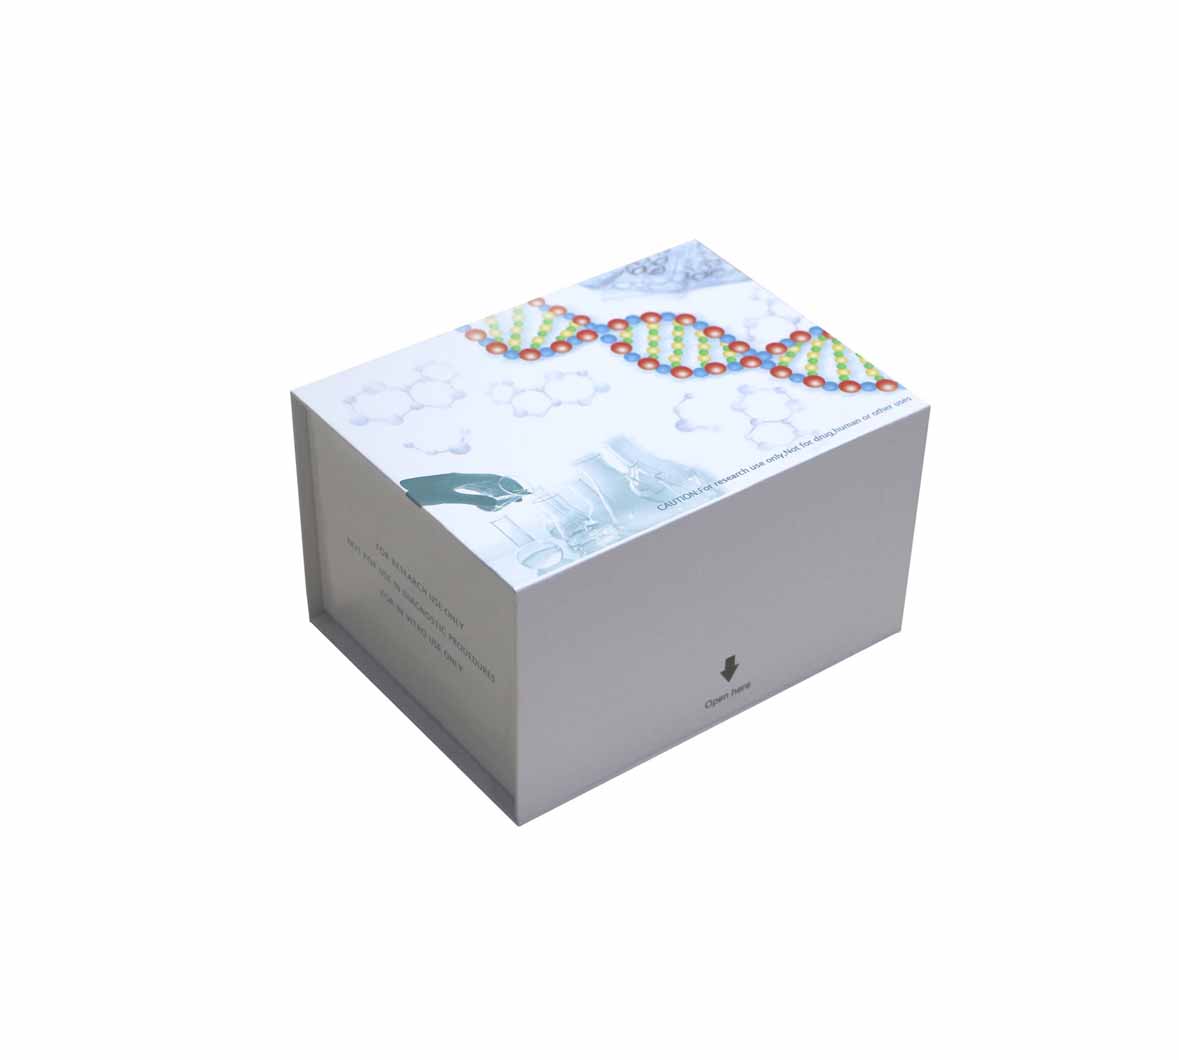 人凝血因子Ⅺ抗原(FXI;Ag)ELISA测定试剂盒